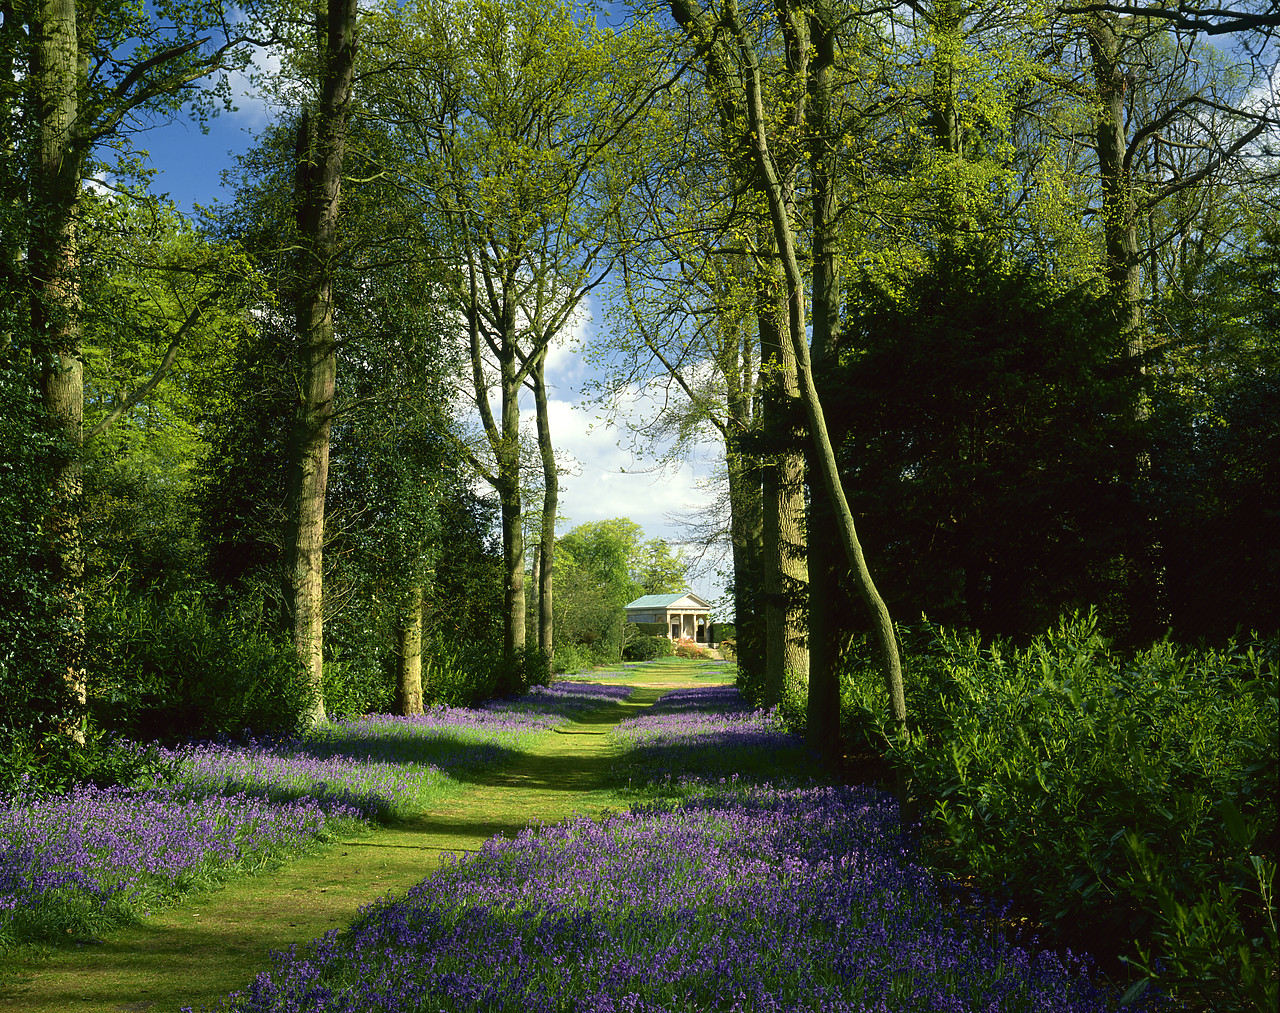 #892095-1 - Avenue of Bluebells, Blickling Hall Gardens, Blickling, Norfolk, England